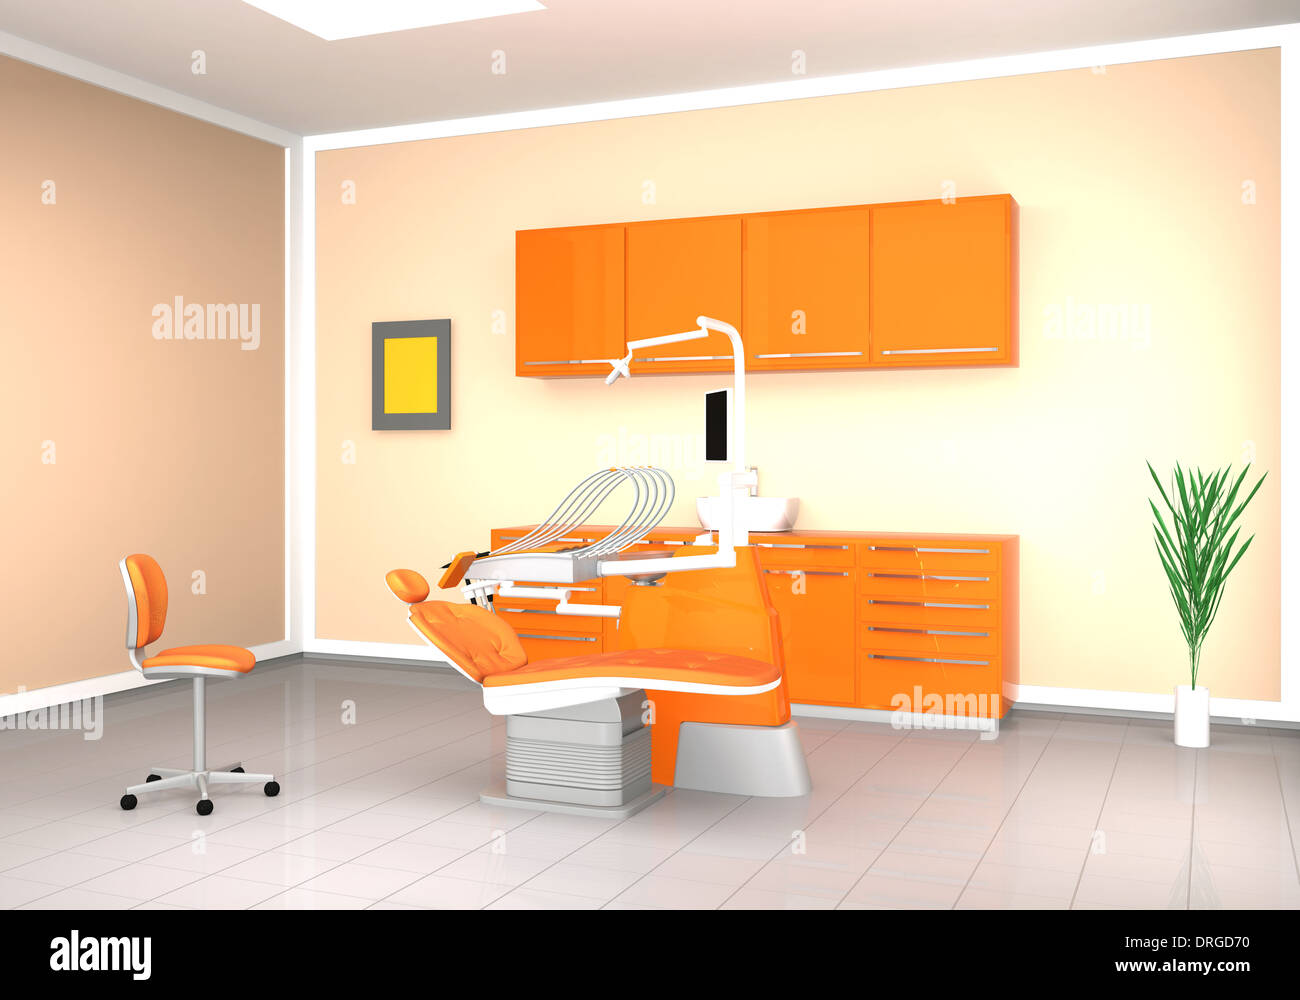 Image intérieur de clinique dentaire Banque D'Images